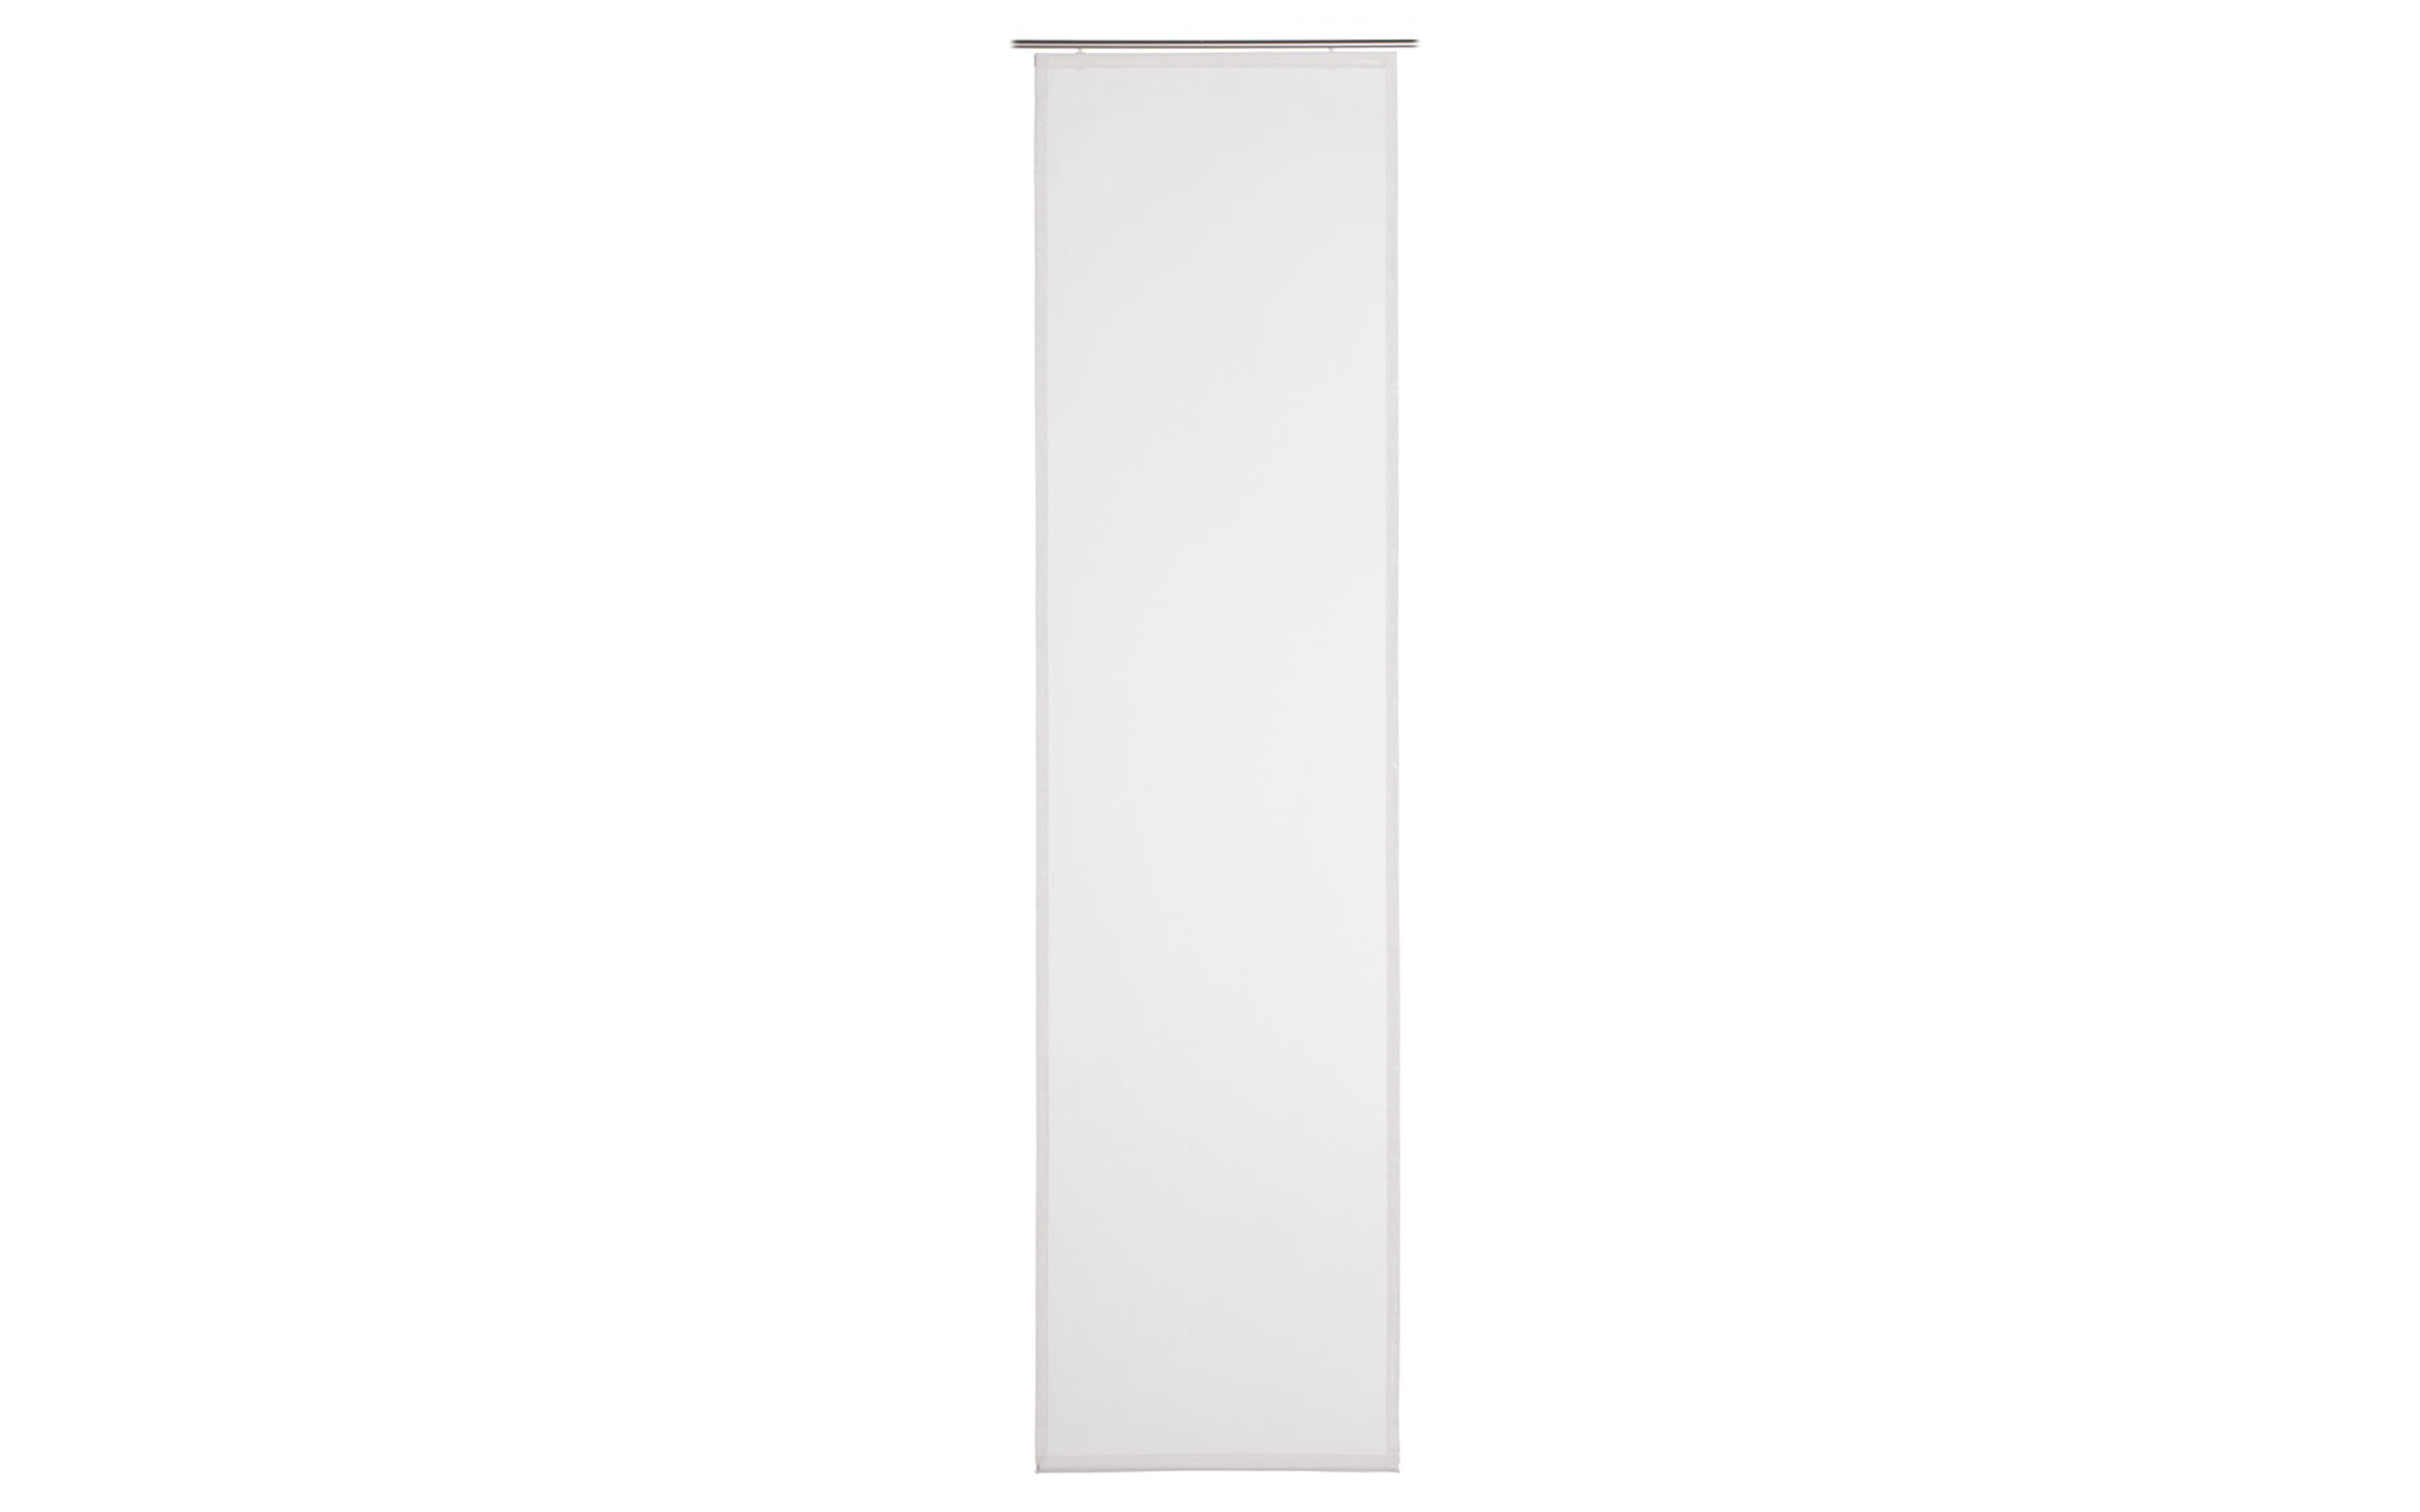 Schiebevorhang Vigo, weiß, 60 x 245 cm